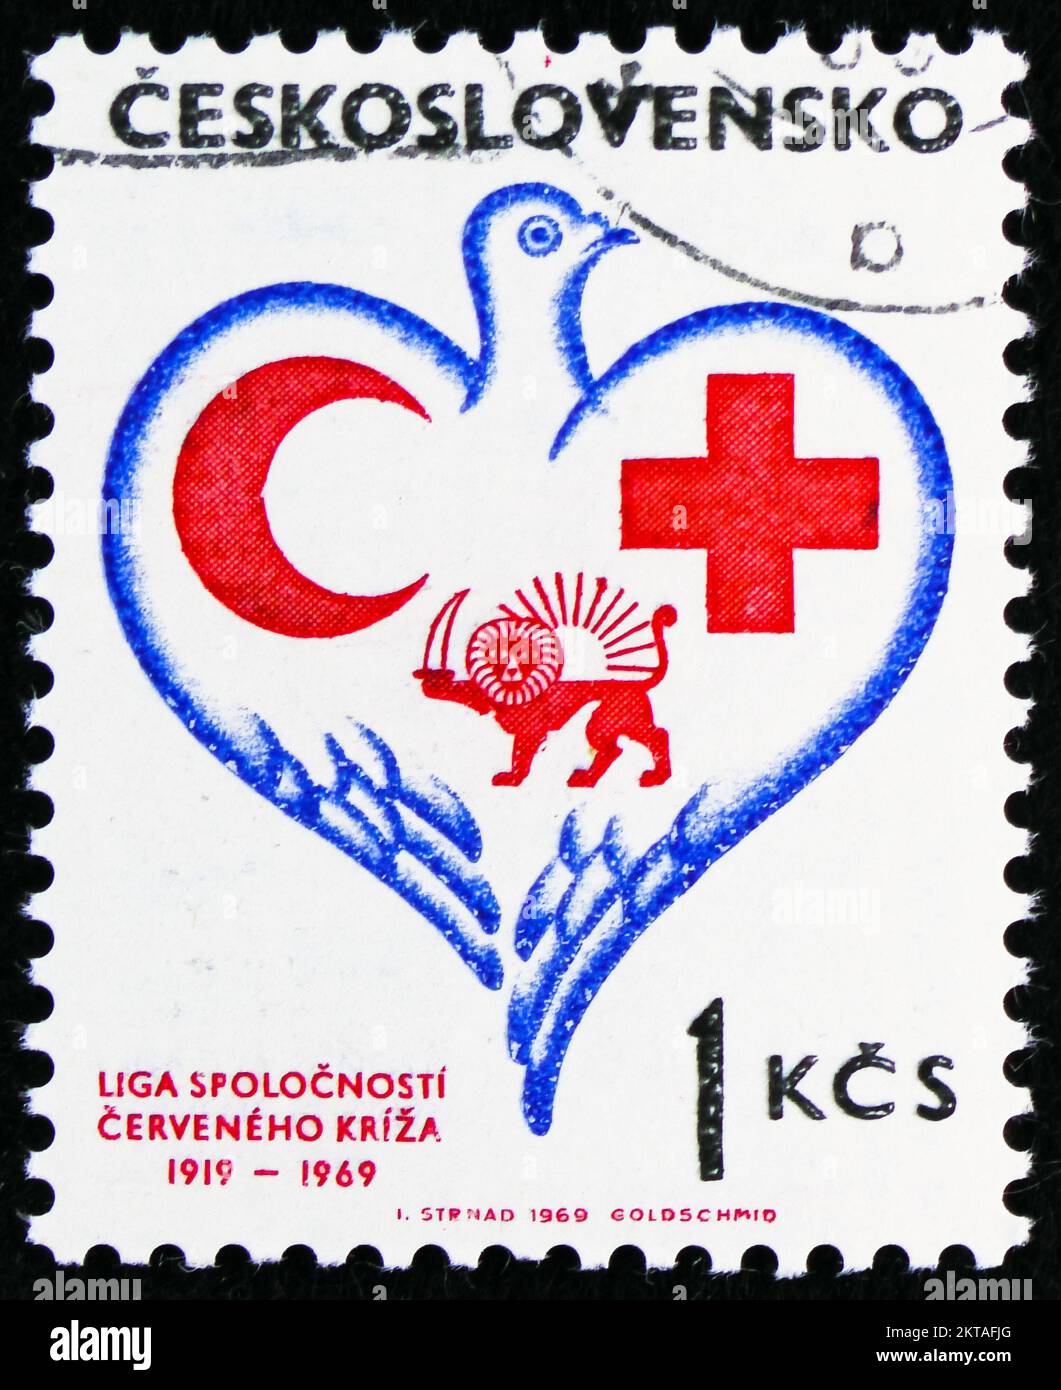 MOSCOU, RUSSIE - 29 OCTOBRE 2022 : le timbre-poste imprimé en Tchécoslovaquie montre la Croix-Rouge tchécoslovaque, 150th anniversaire, série, vers 1969 Banque D'Images